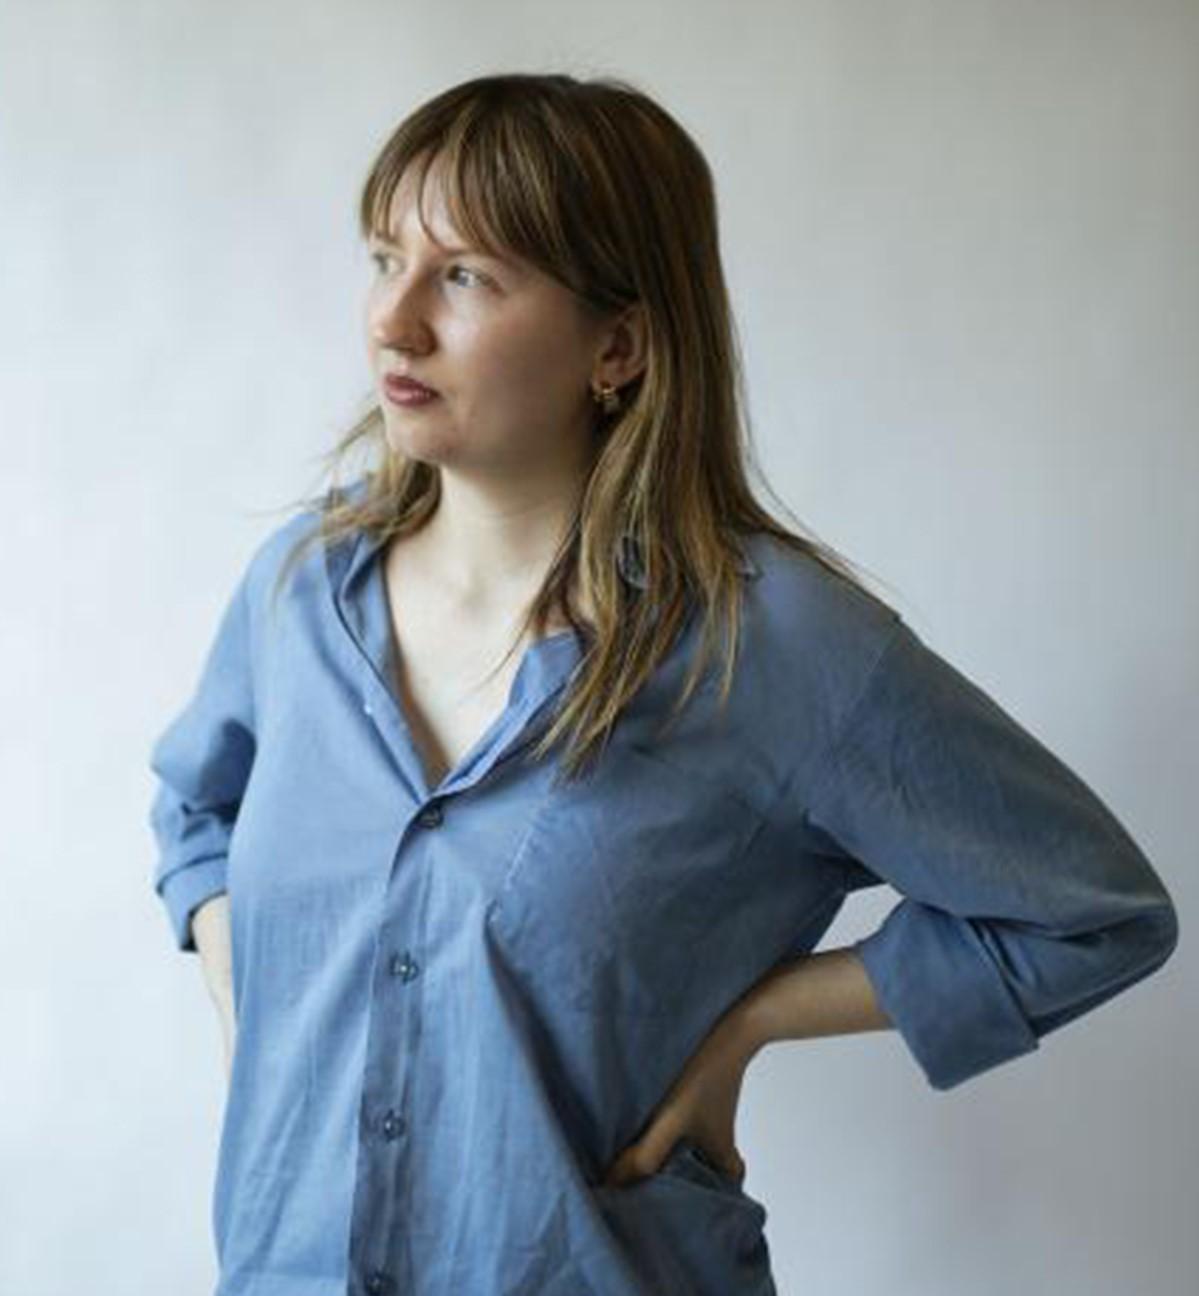 Foto på Simone Norberg i en inomhus studiomiljö. Simone har på sig en ljusblå skjorta och jeans. Simones blonda hår hänger ned över axlarna medans hon tittar bort mot vänster.